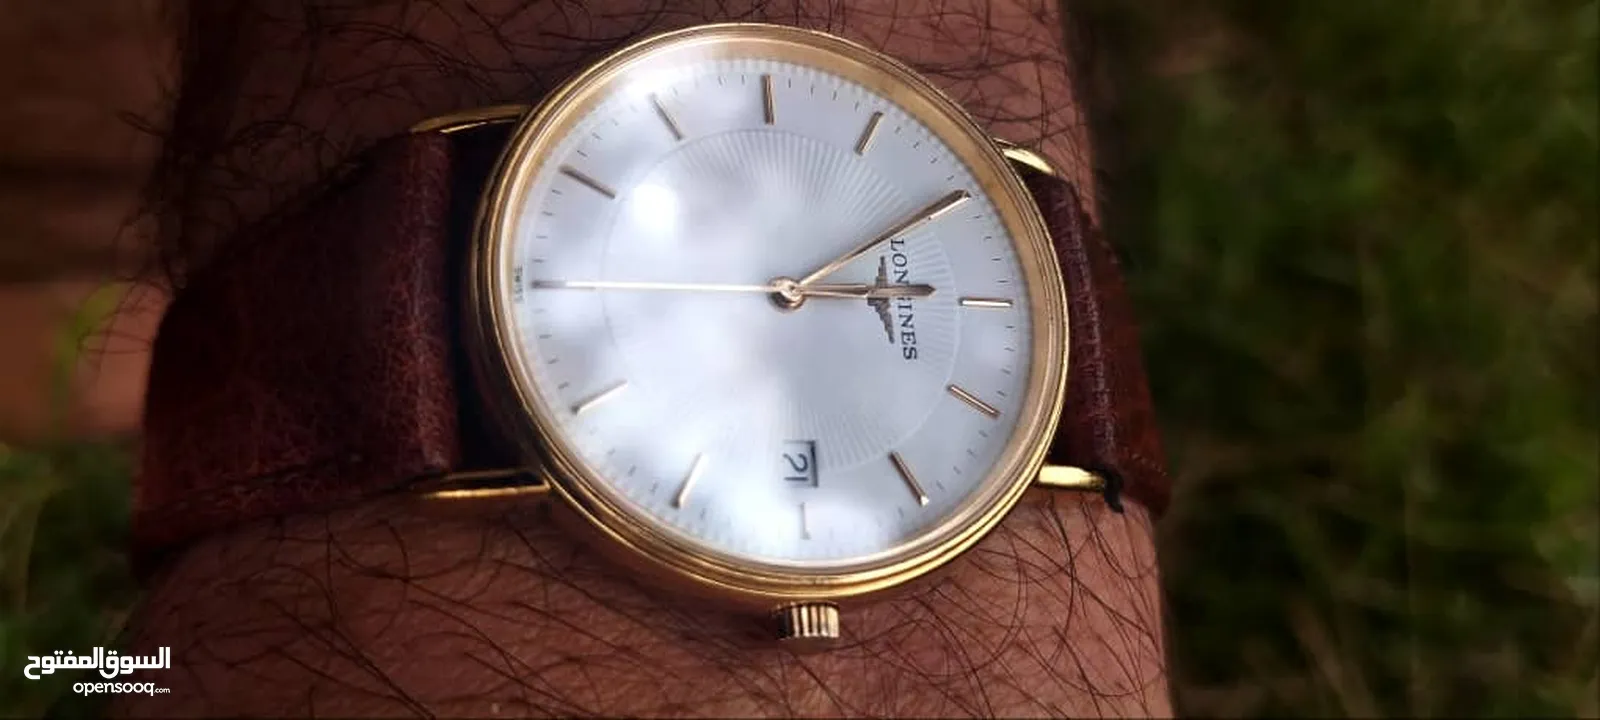 ساعة لونجين كوارتز سوسيرية أصلية اورجينال بالعلبة